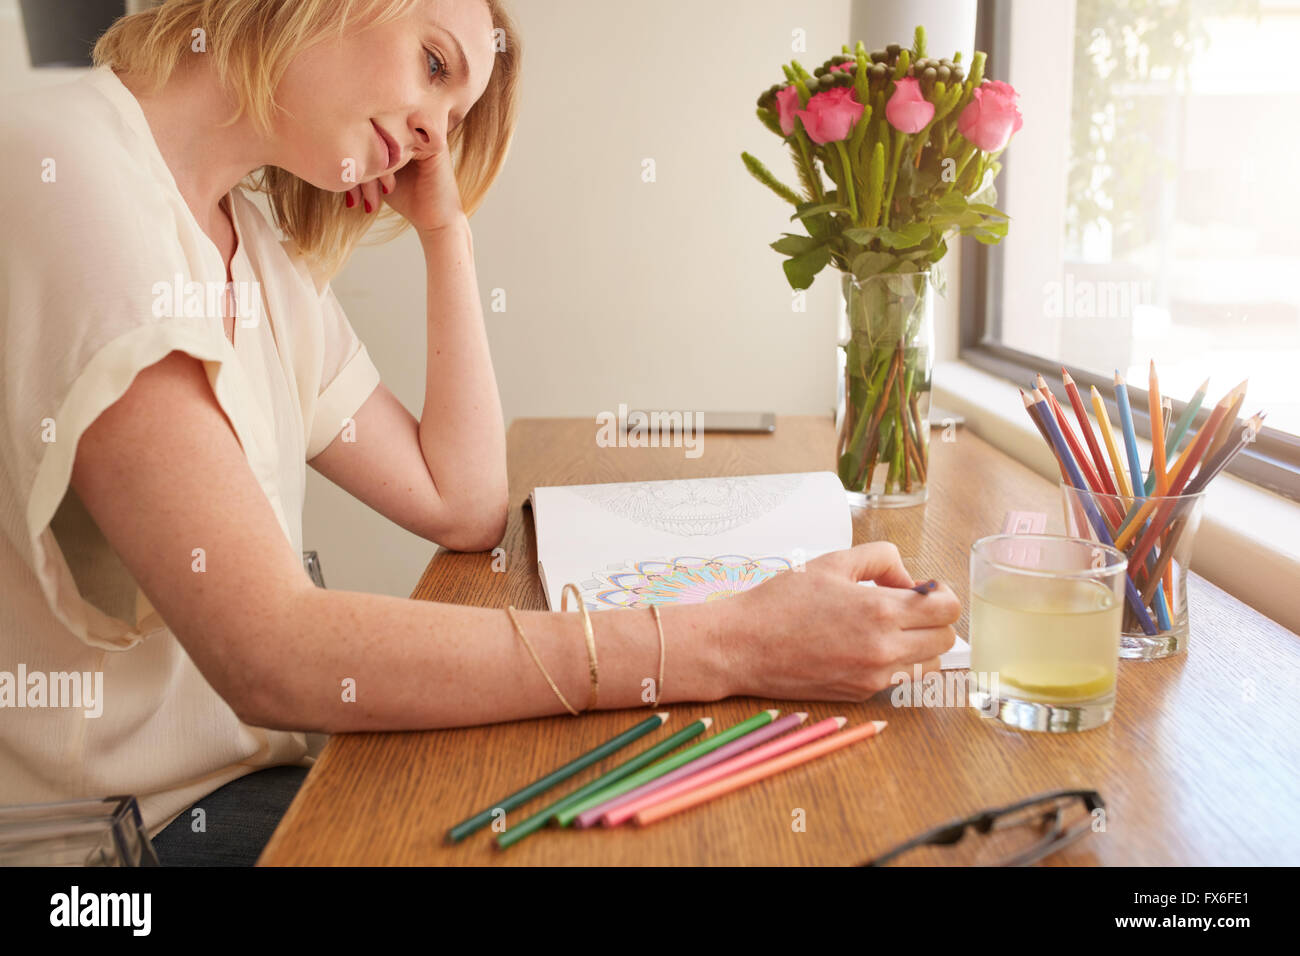 Frau zeichnen eine Erwachsene Malbuch bequem sitzend am Tisch am Fenster. Stockfoto